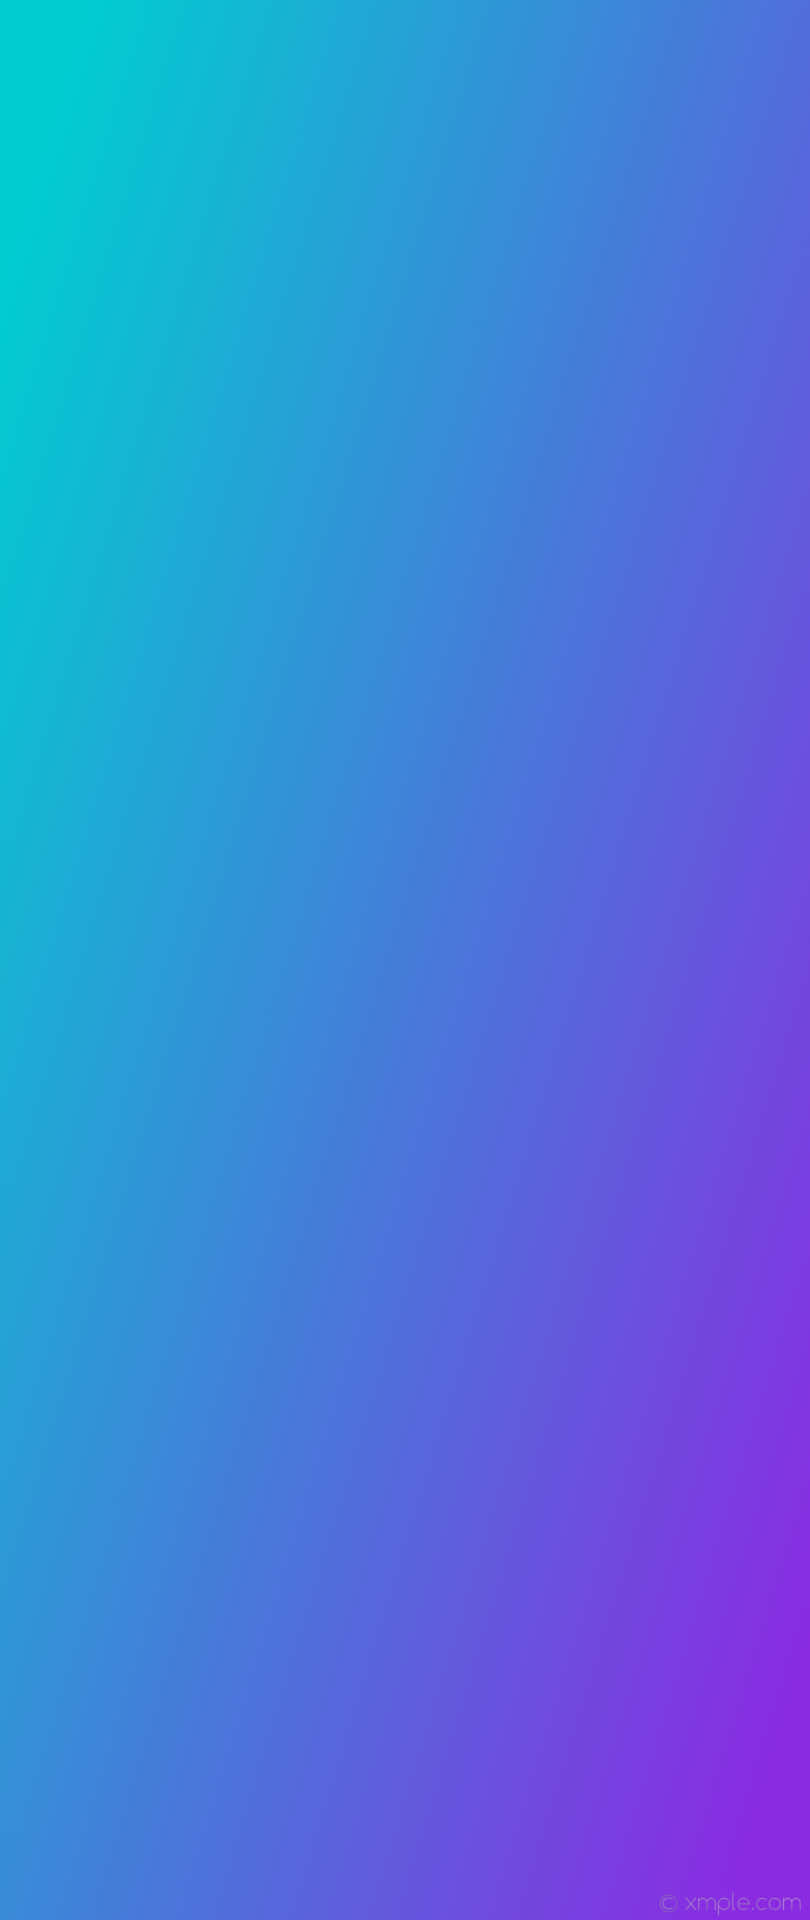 Suavey Sutil Degradado De Violeta Y Azul Fondo de pantalla